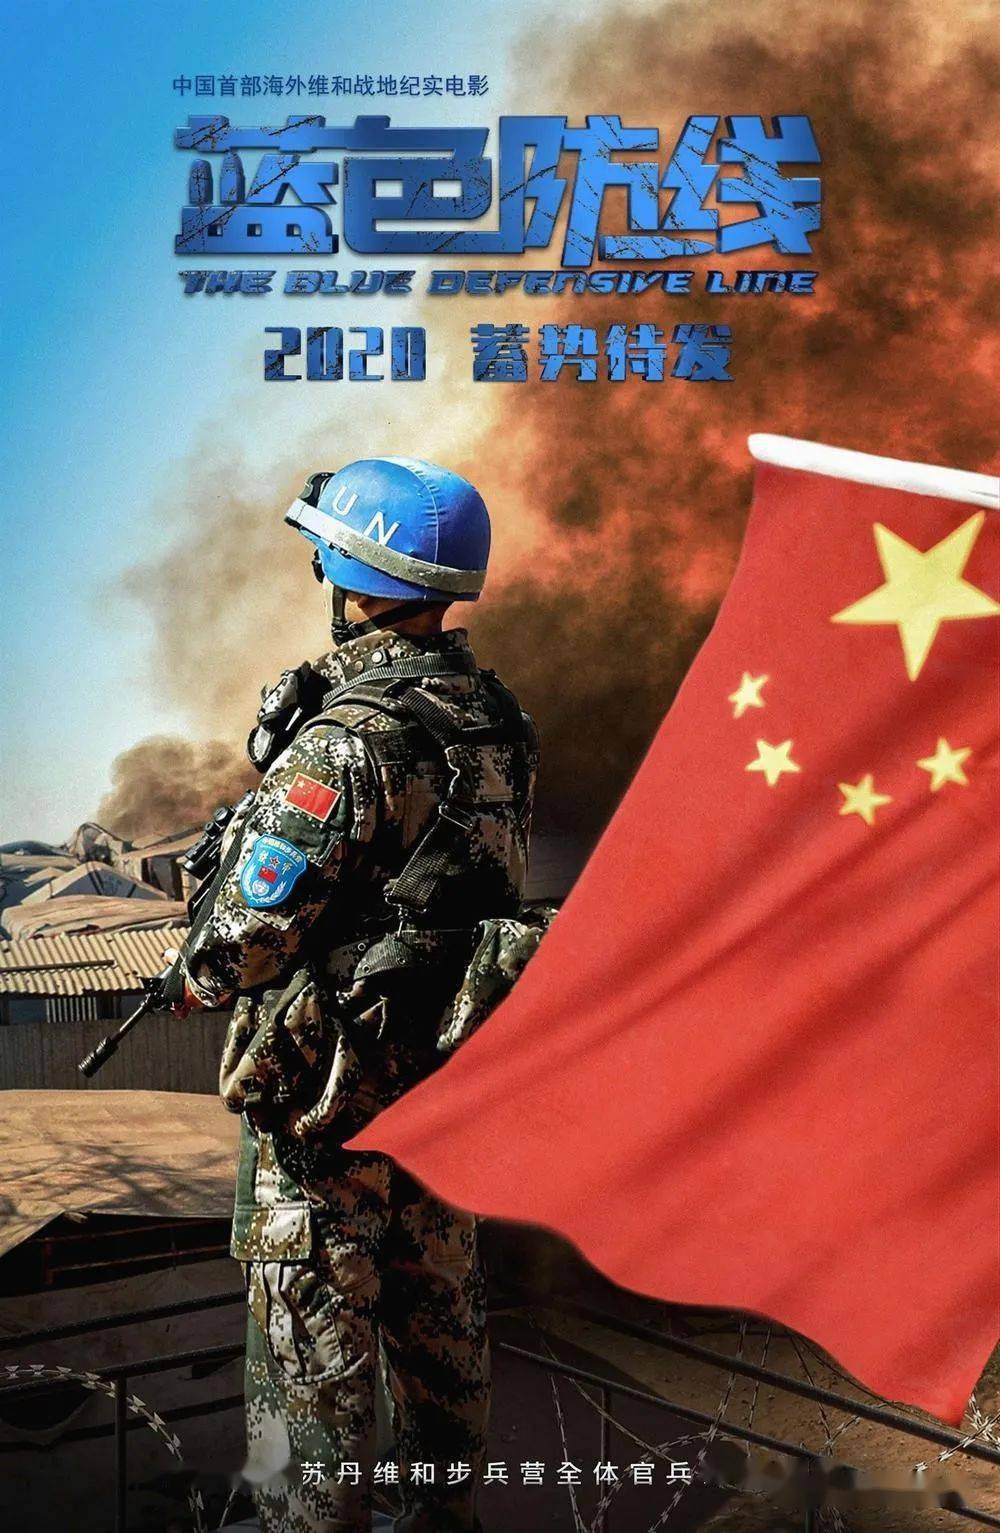 《蓝色防线》传递英雄力量 致敬中国蓝盔!